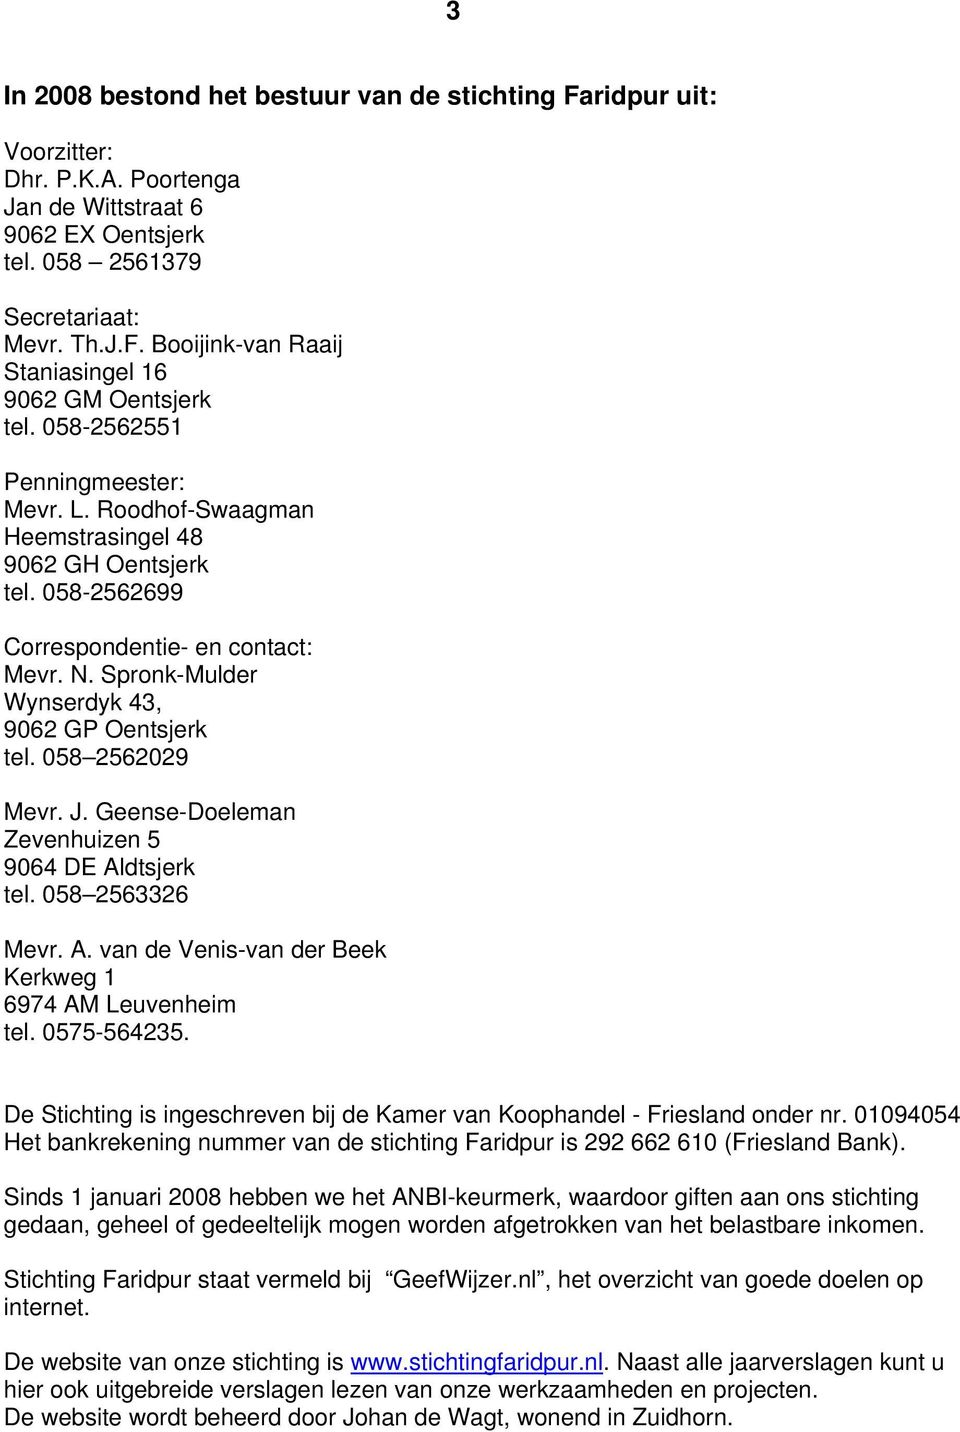 058 2562029 Mevr. J. Geense-Doeleman Zevenhuizen 5 9064 DE Aldtsjerk tel. 058 2563326 Mevr. A. van de Venis-van der Beek Kerkweg 1 6974 AM Leuvenheim tel. 0575-564235.